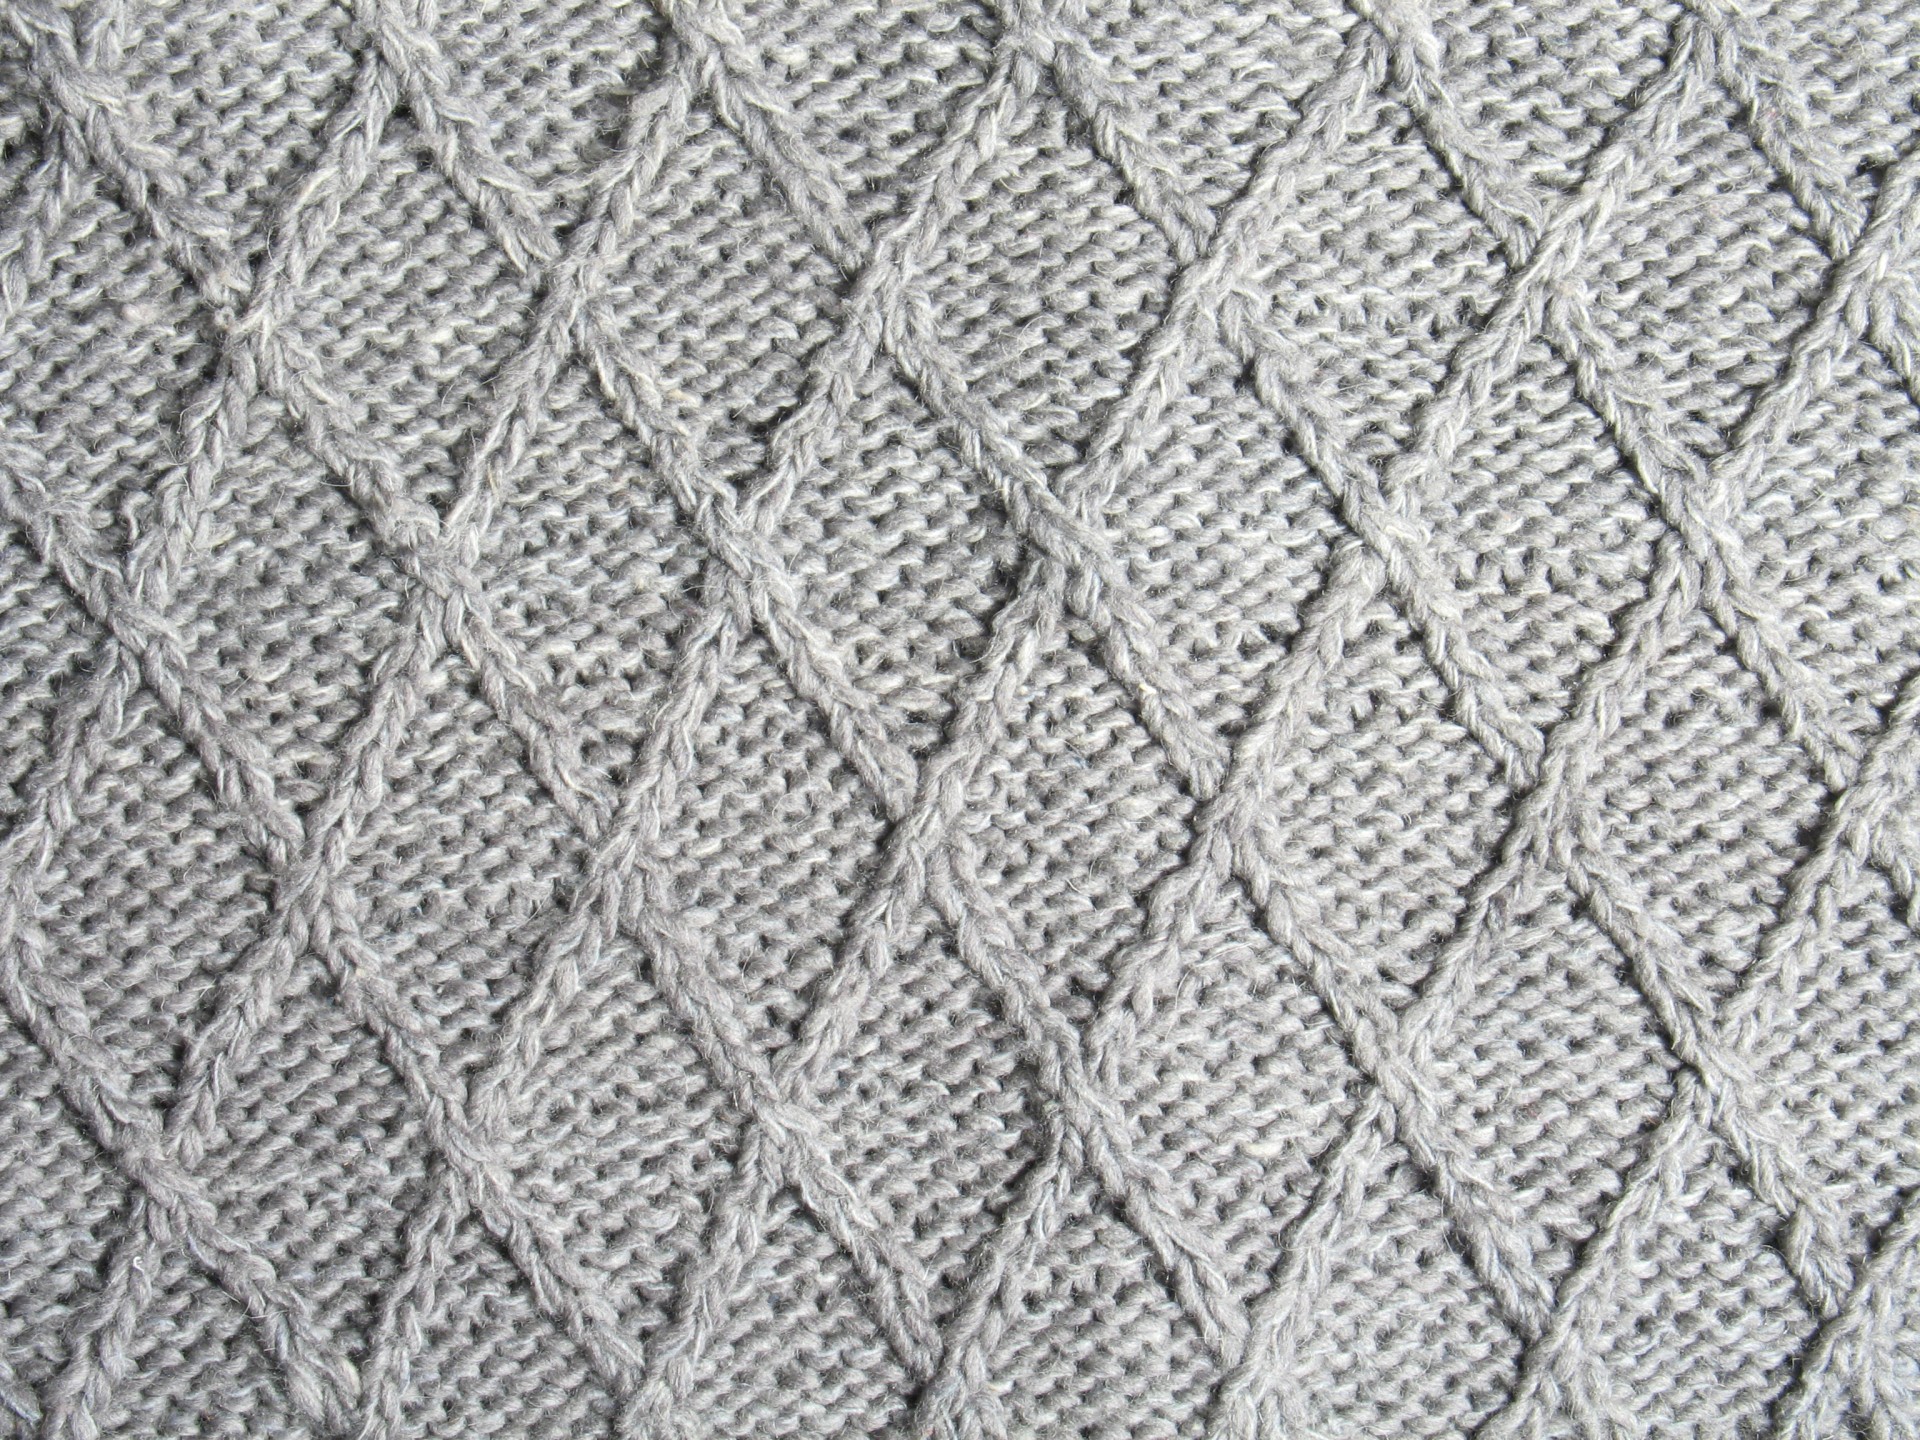 craft knitting pattern free photo